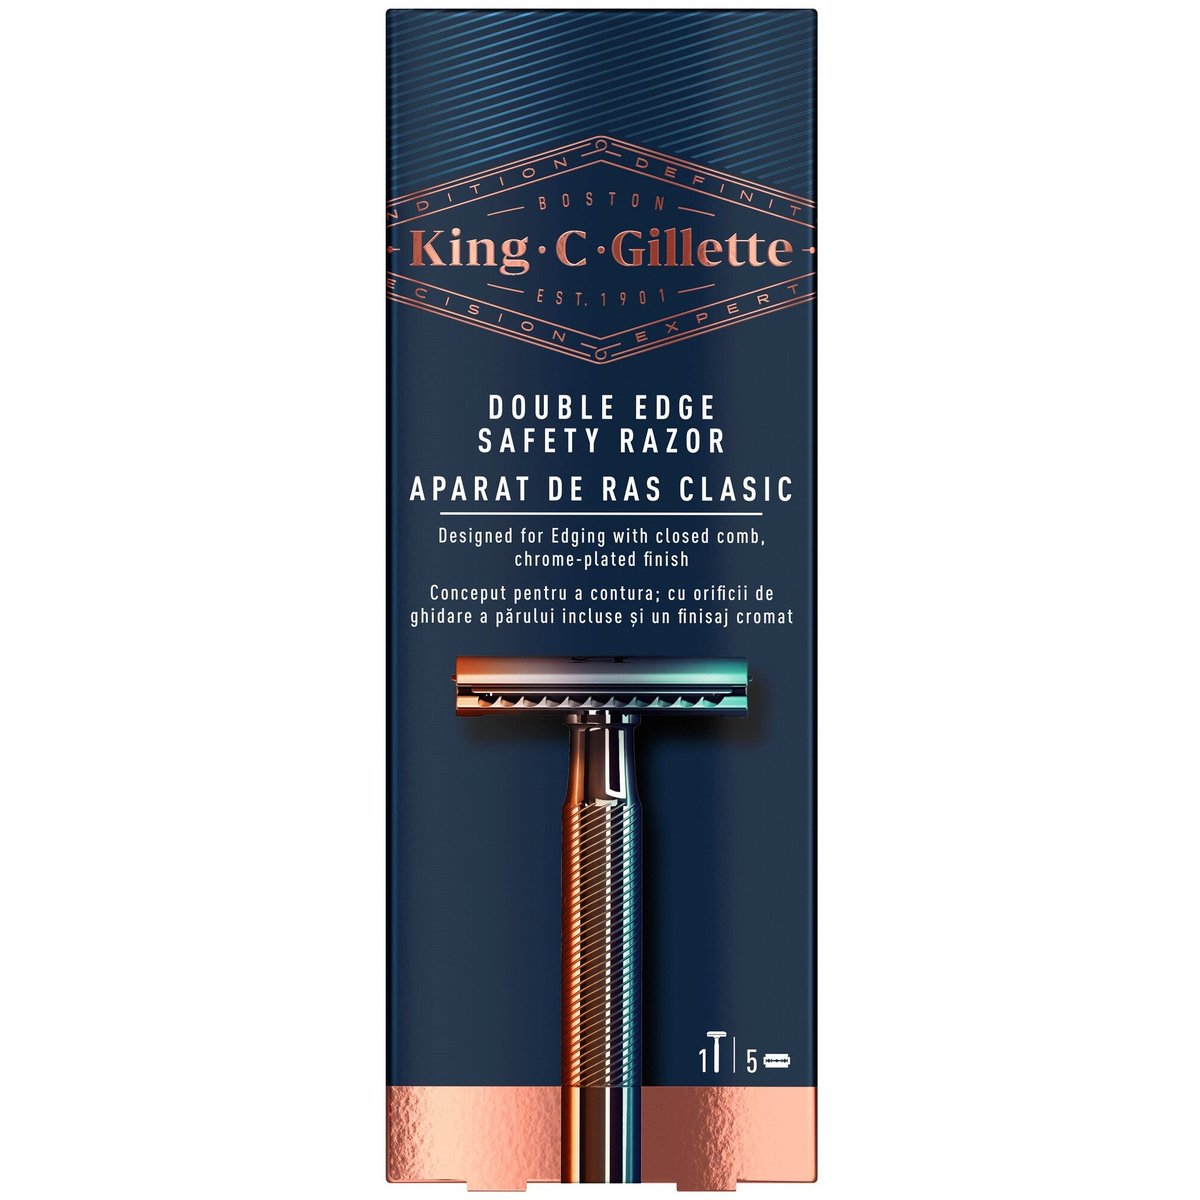 King C. Gillette Žiletkový pánský holicí strojek, 5 holicích hlavic s platinovým potahem